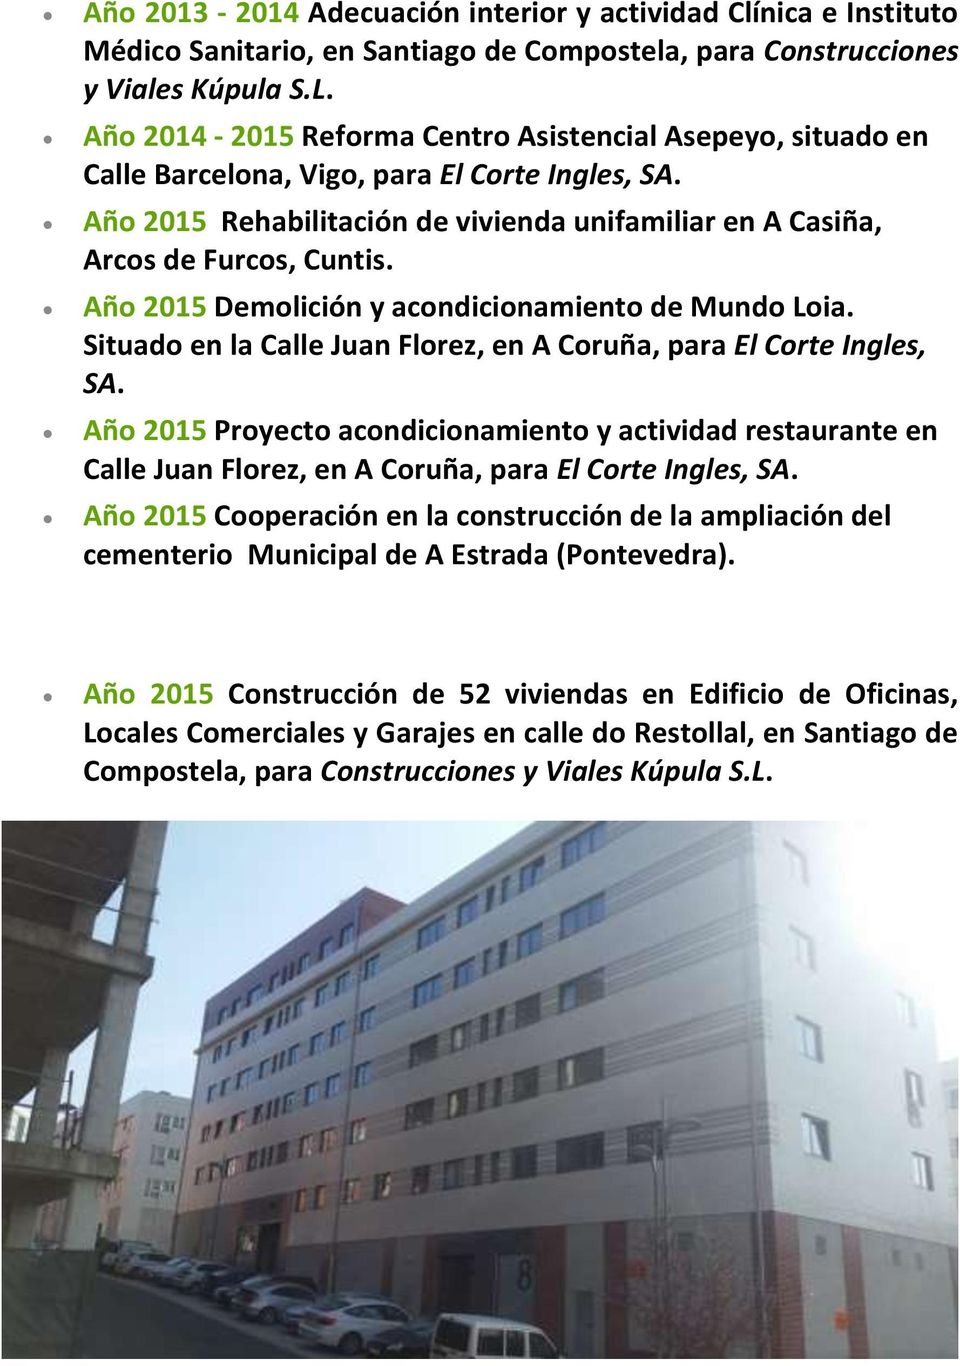 Año 2015 Demolición y acondicionamiento de Mundo Loia. Situado en la Calle Juan Florez, en A Coruña, para El Corte Ingles, SA.